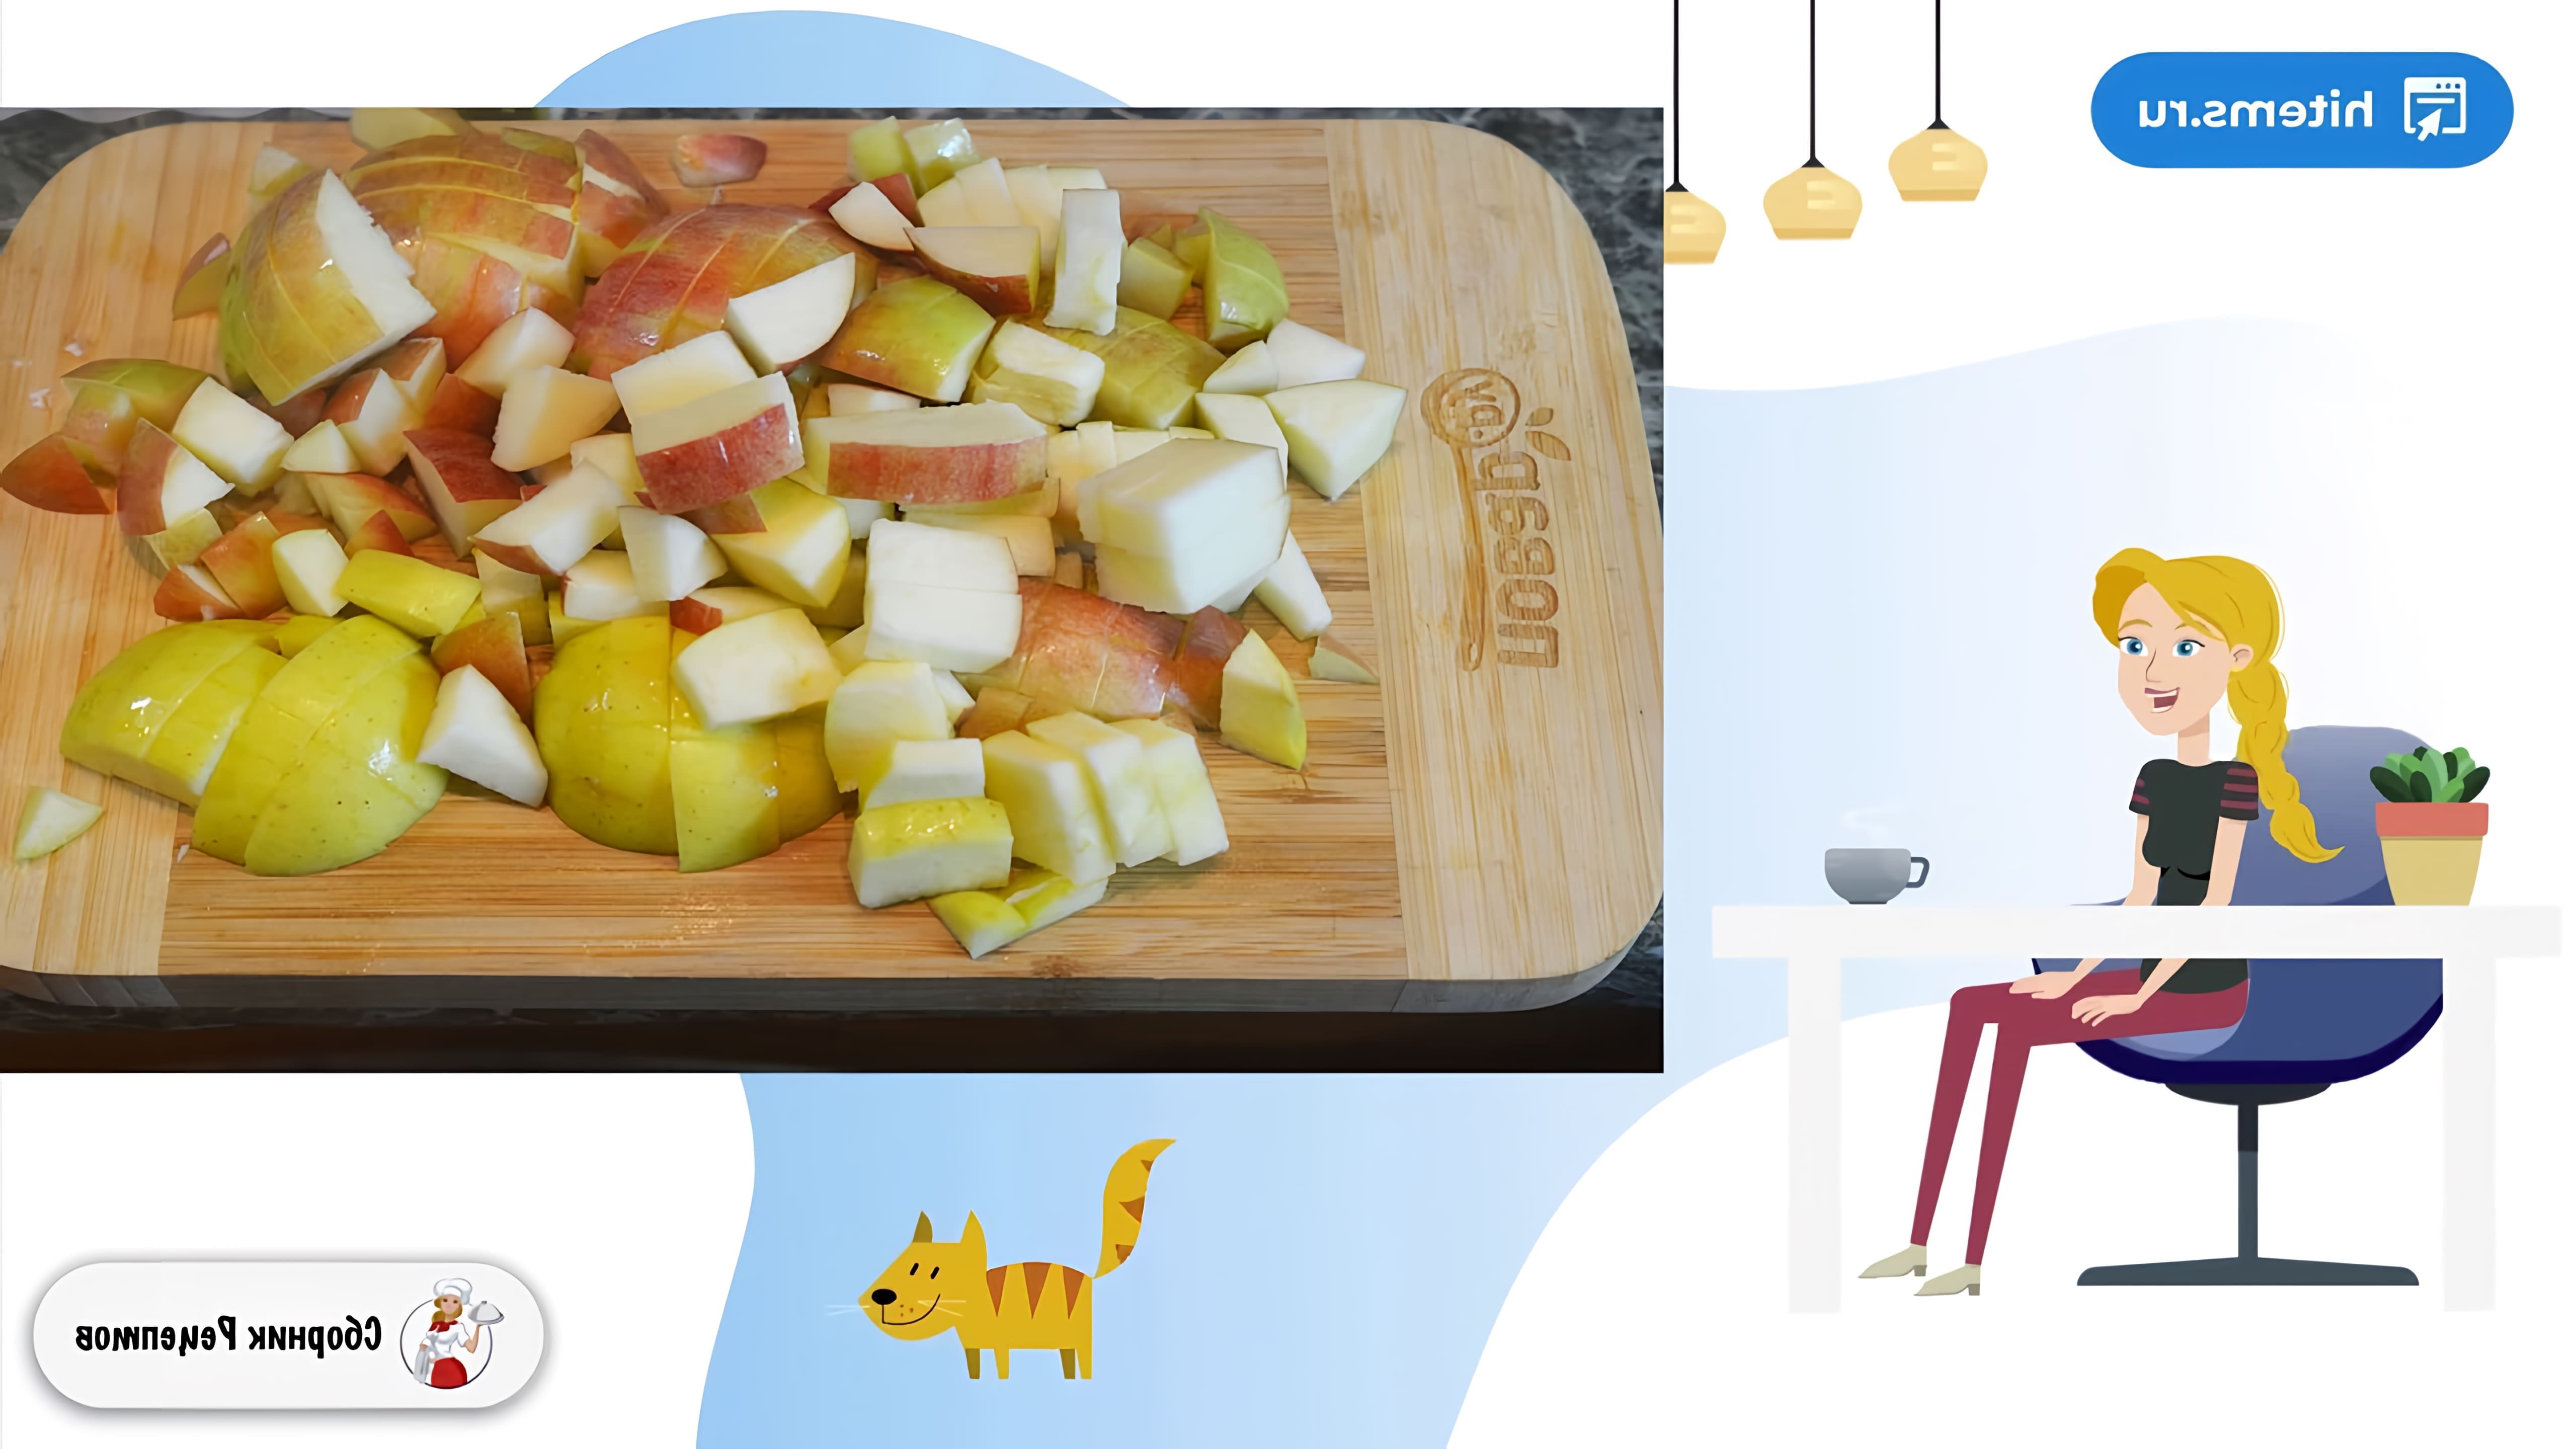 В этом видео демонстрируется рецепт классической шарлотки с яблоками